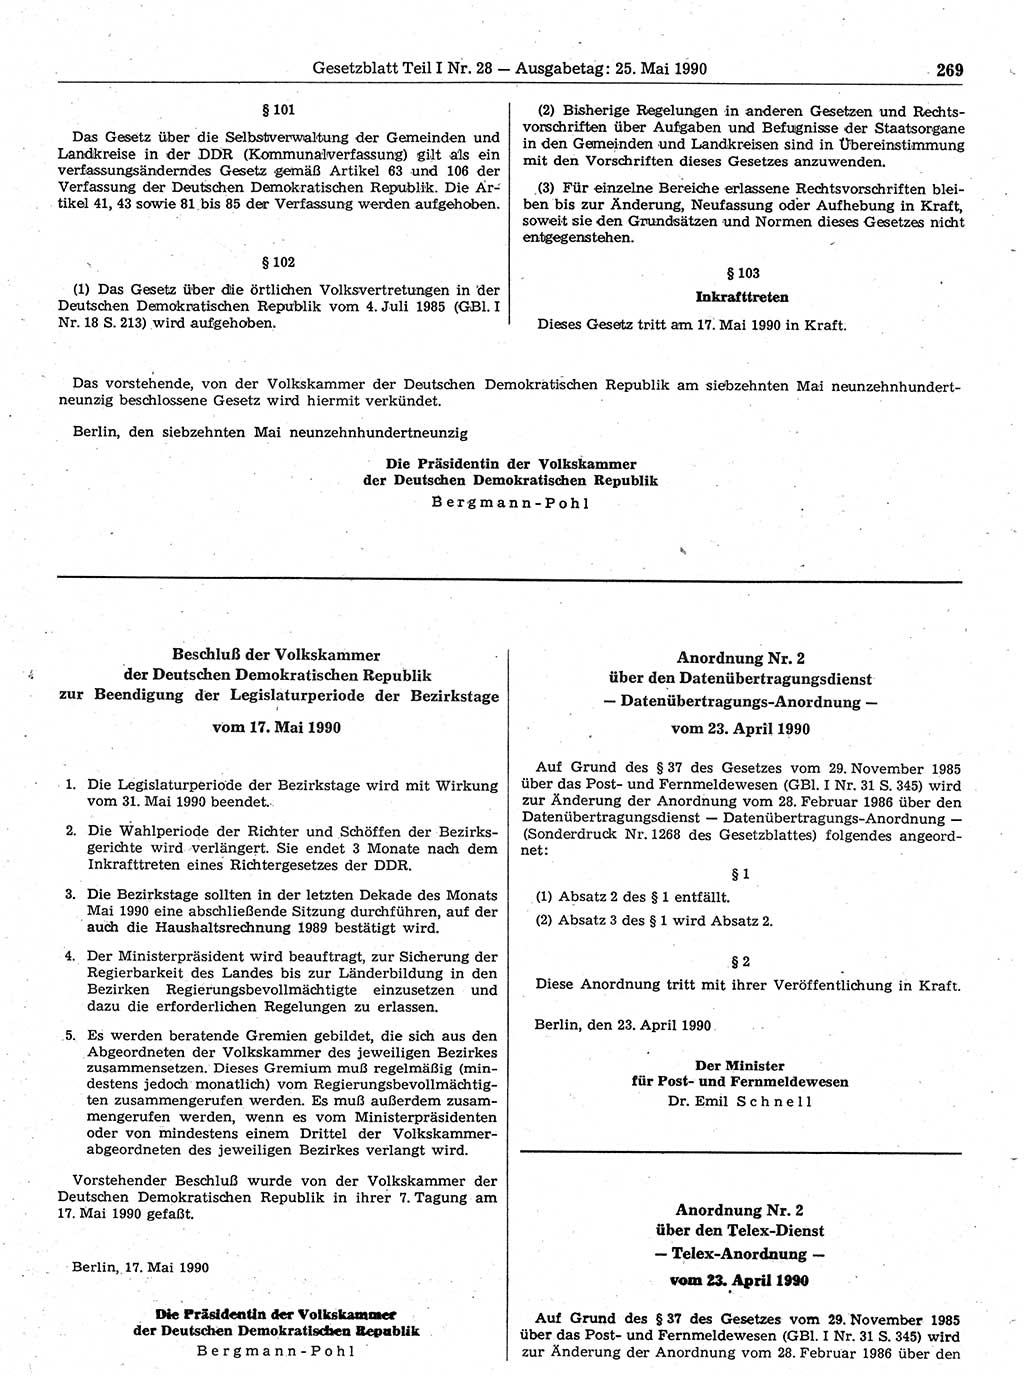 Gesetzblatt (GBl.) der Deutschen Demokratischen Republik (DDR) Teil Ⅰ 1990, Seite 269 (GBl. DDR Ⅰ 1990, S. 269)